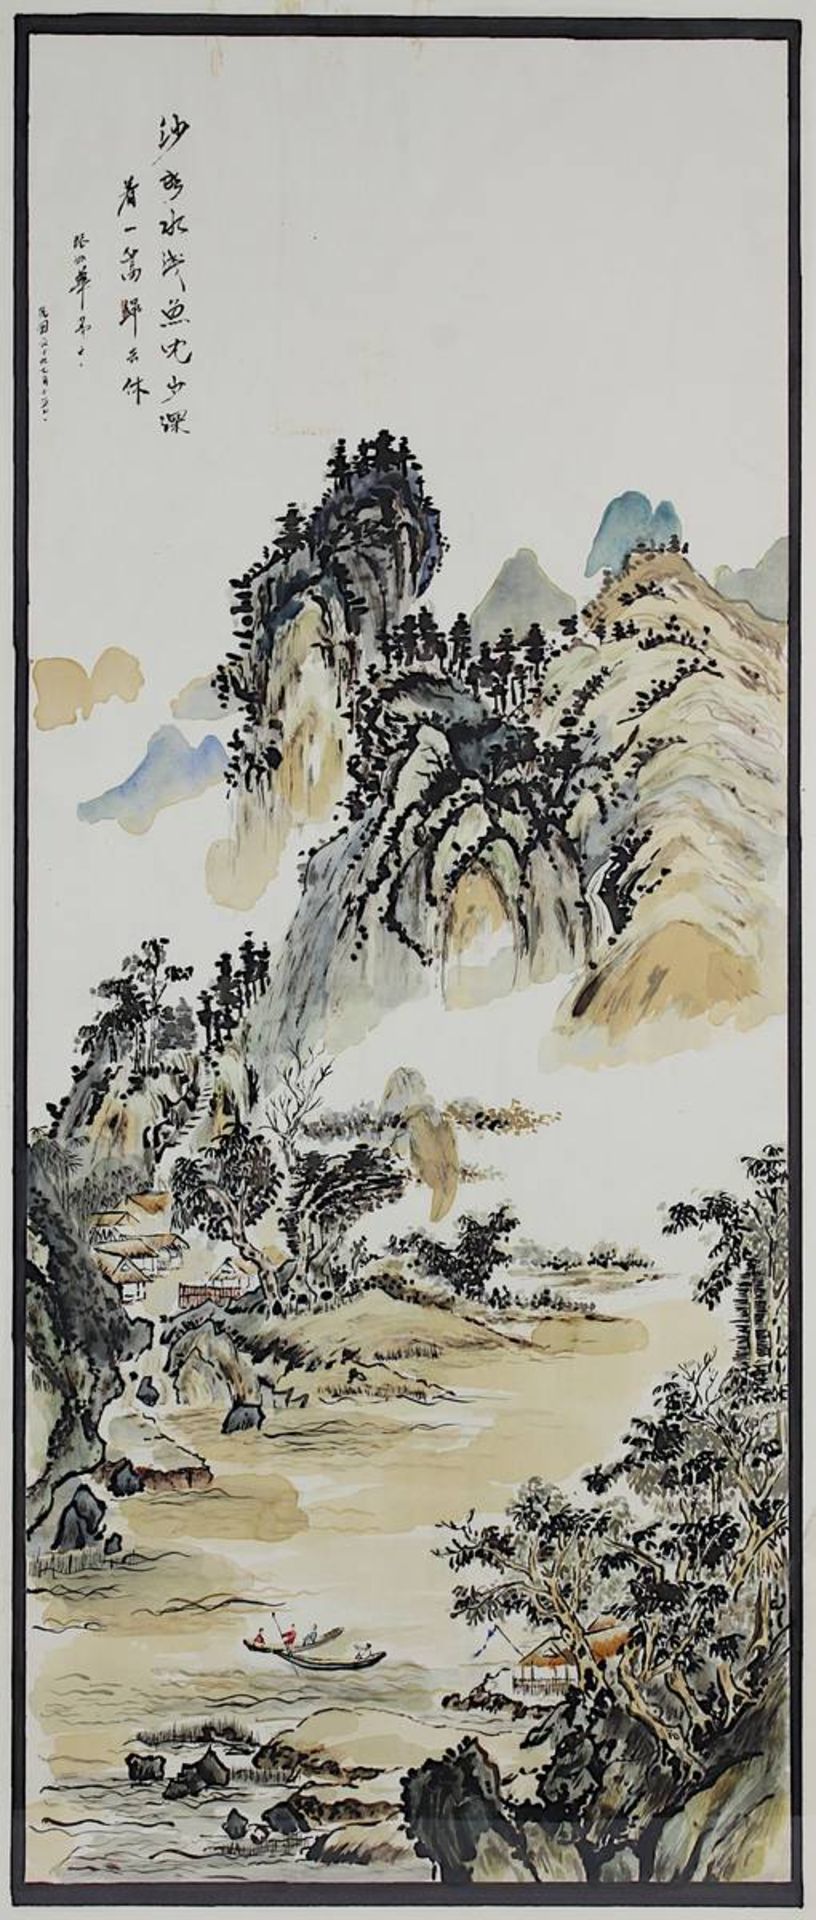 Chinesisches Landschaftsaquarell, um 1950, schmal hochformatig, li. o. chinesisch bez., Fluss in - Image 2 of 2